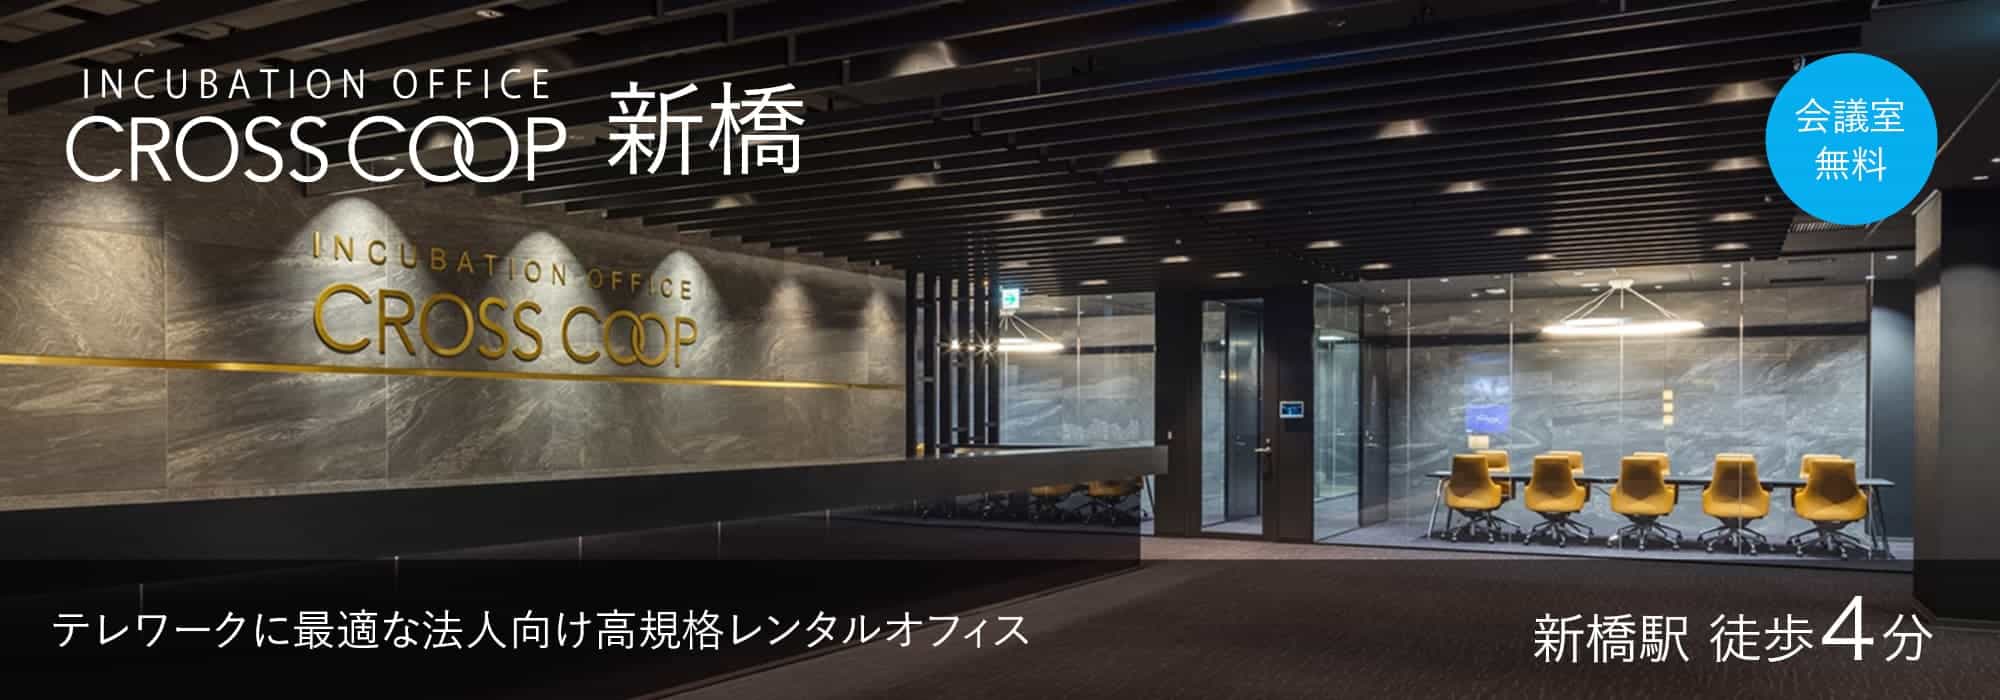 東京の高規格レンタルオフィス【CROSSCOOP新橋】新橋駅から徒歩4分、テレワークに最適な法人向けオフィス